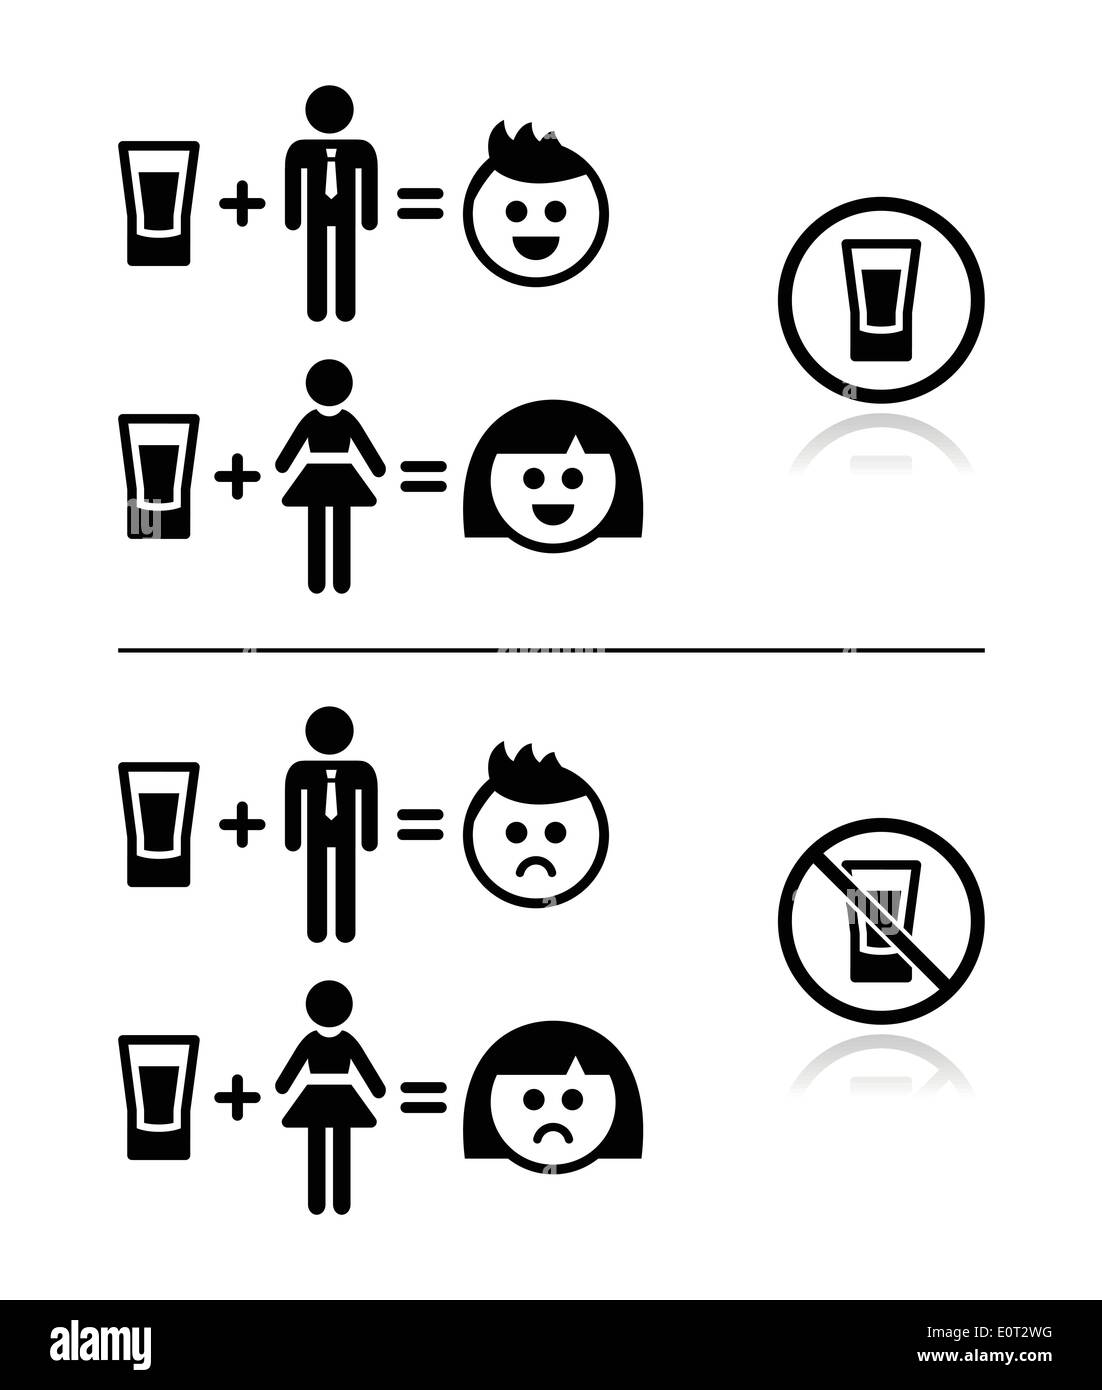 Menschen trinken Alkohol - traurig und glücklich Flächensatz Symbole Stock Vektor